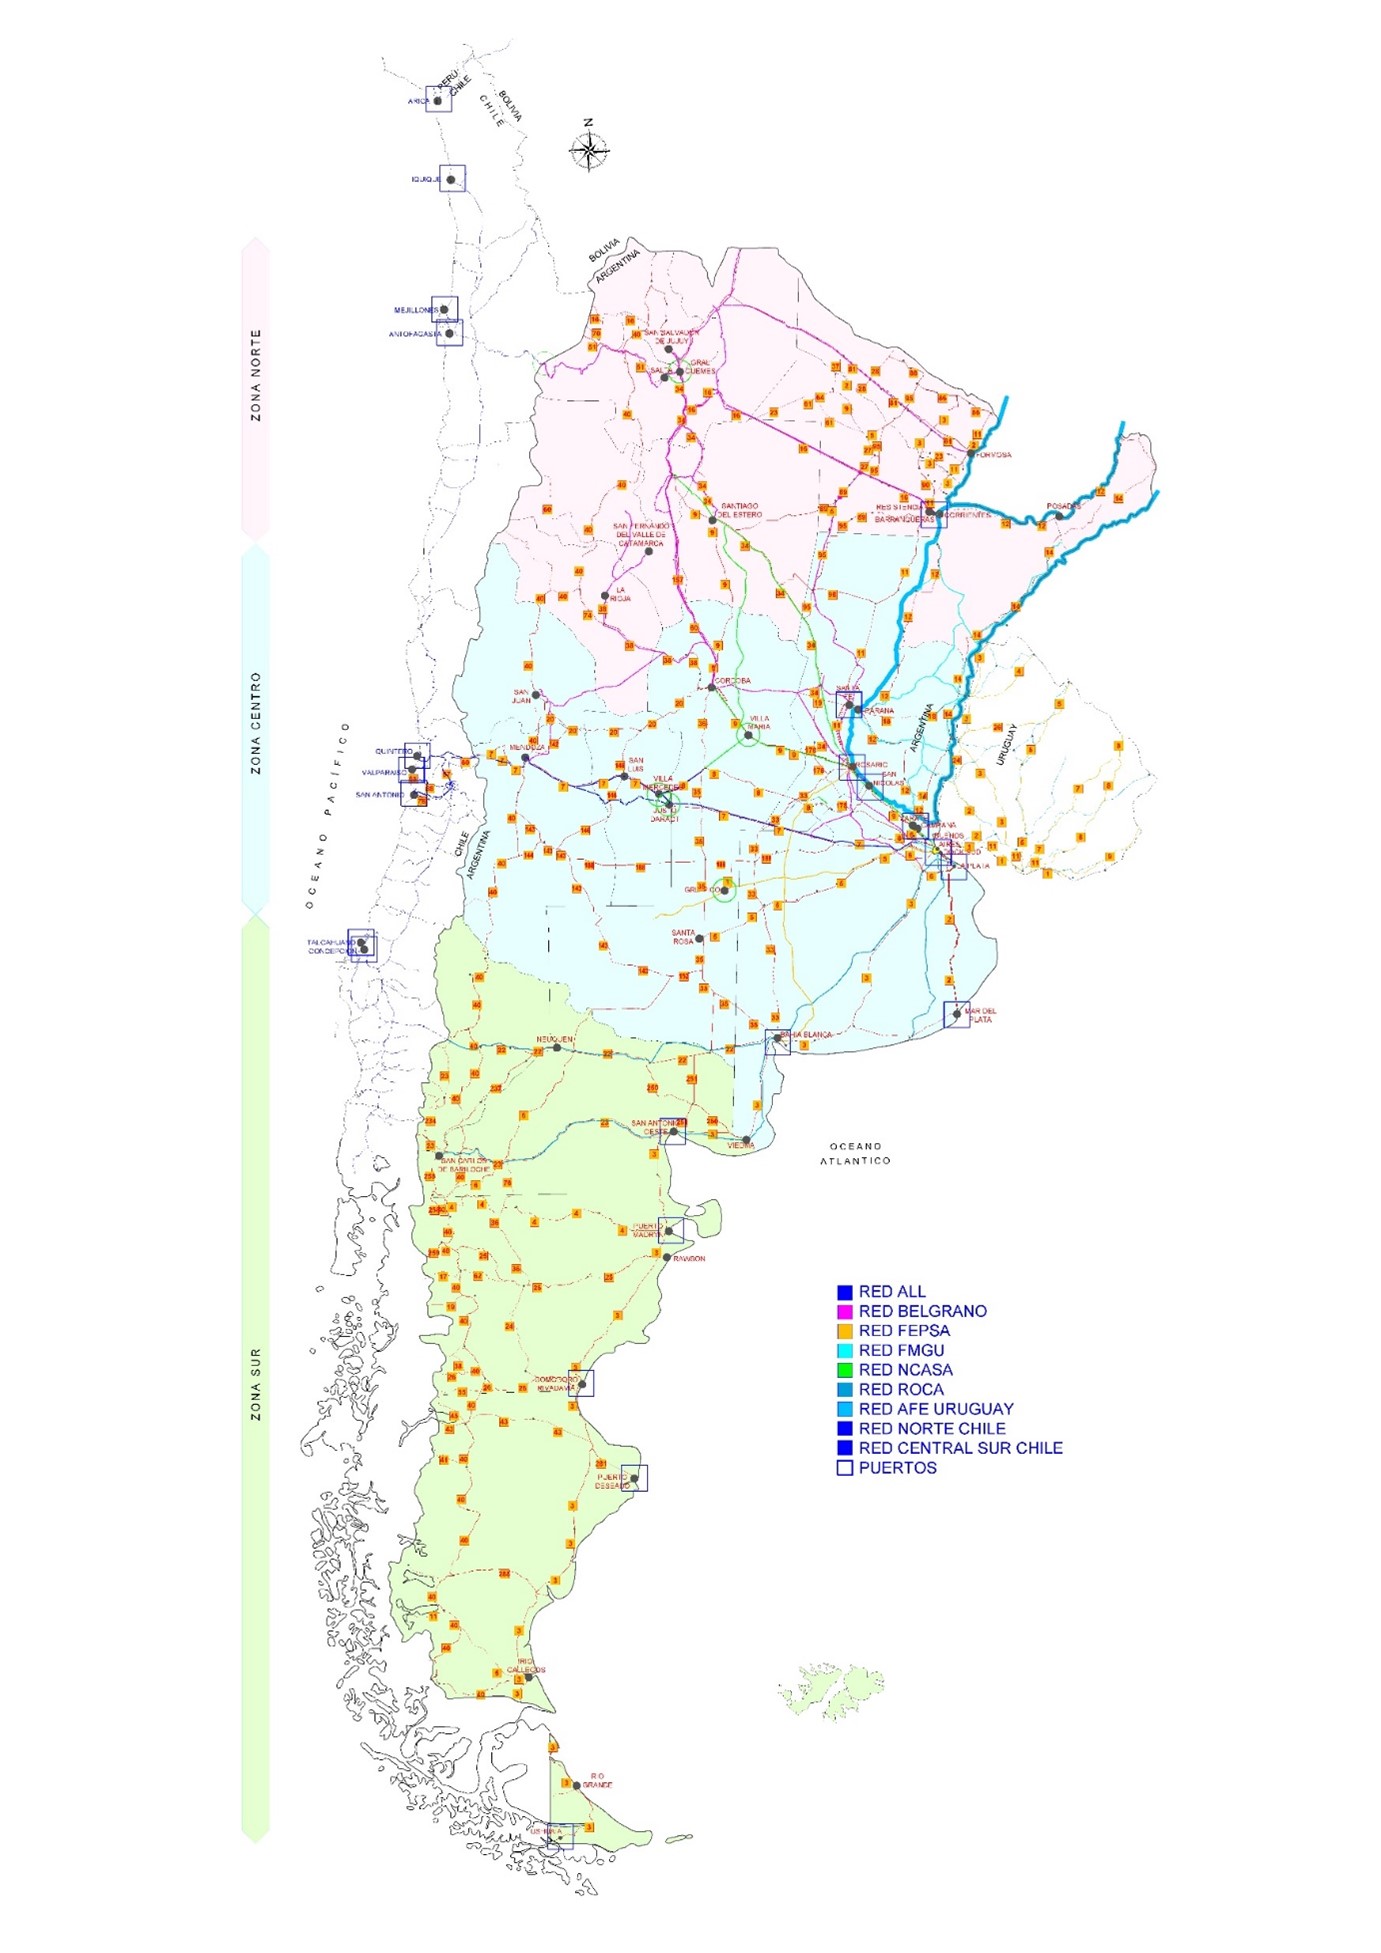 Plan Estratégico del Sistema Portuario Argentino. Realizado en conjunto con MTBS Holanda y M&L. Panamá.